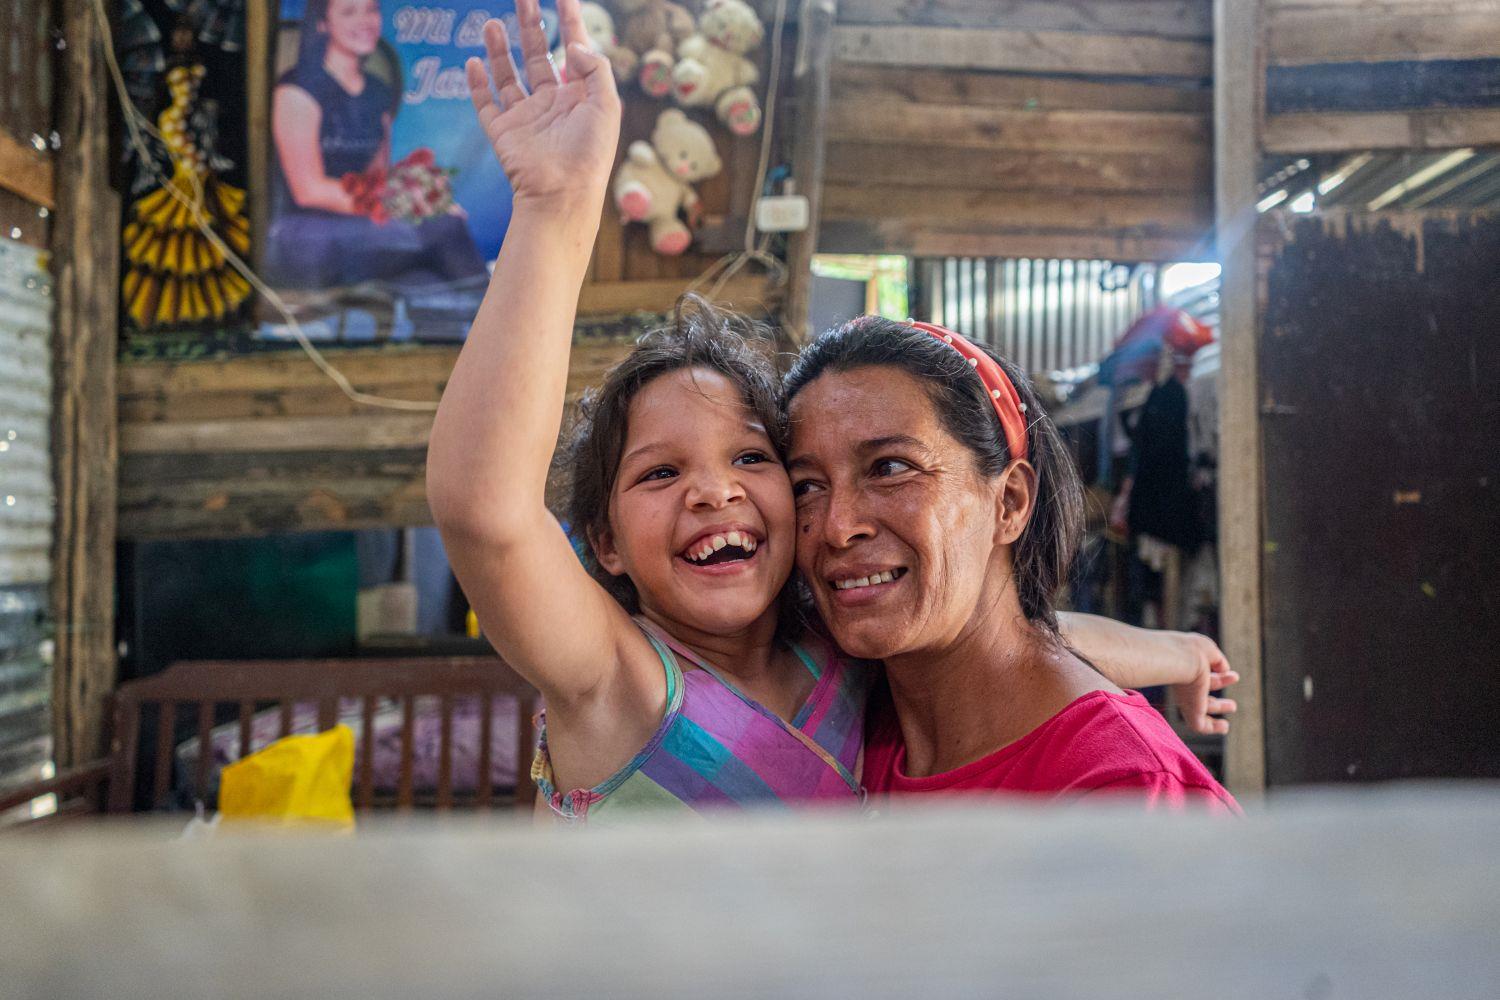 Frau mit kleinem Mädchen auf dem Arm in Kolumbien, beide strahlen